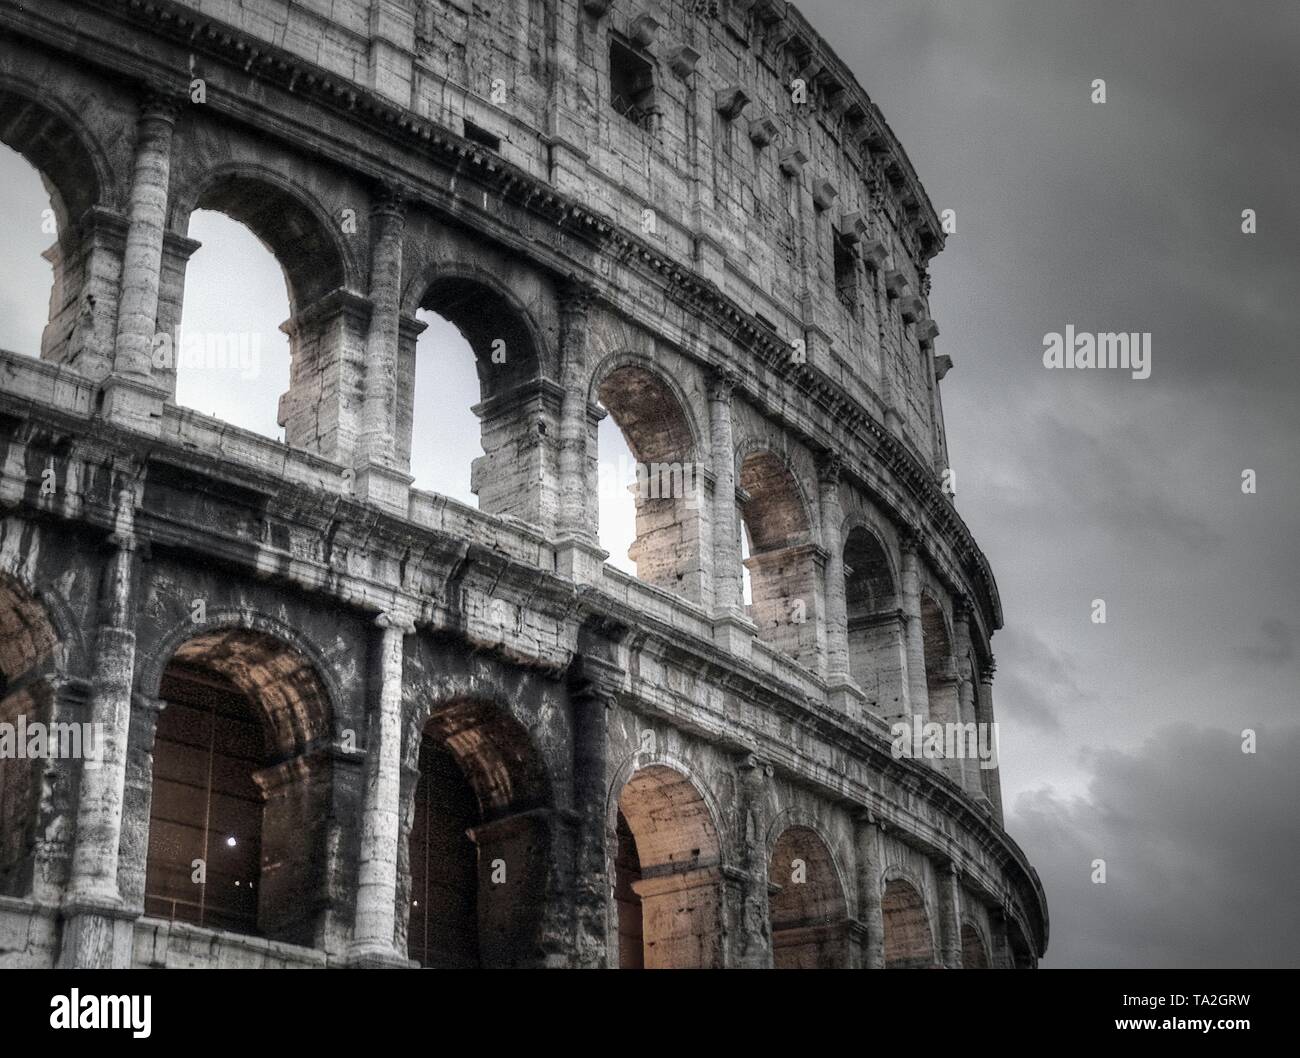 Historique de Rome populaires en Italie un jour de pluie Banque D'Images